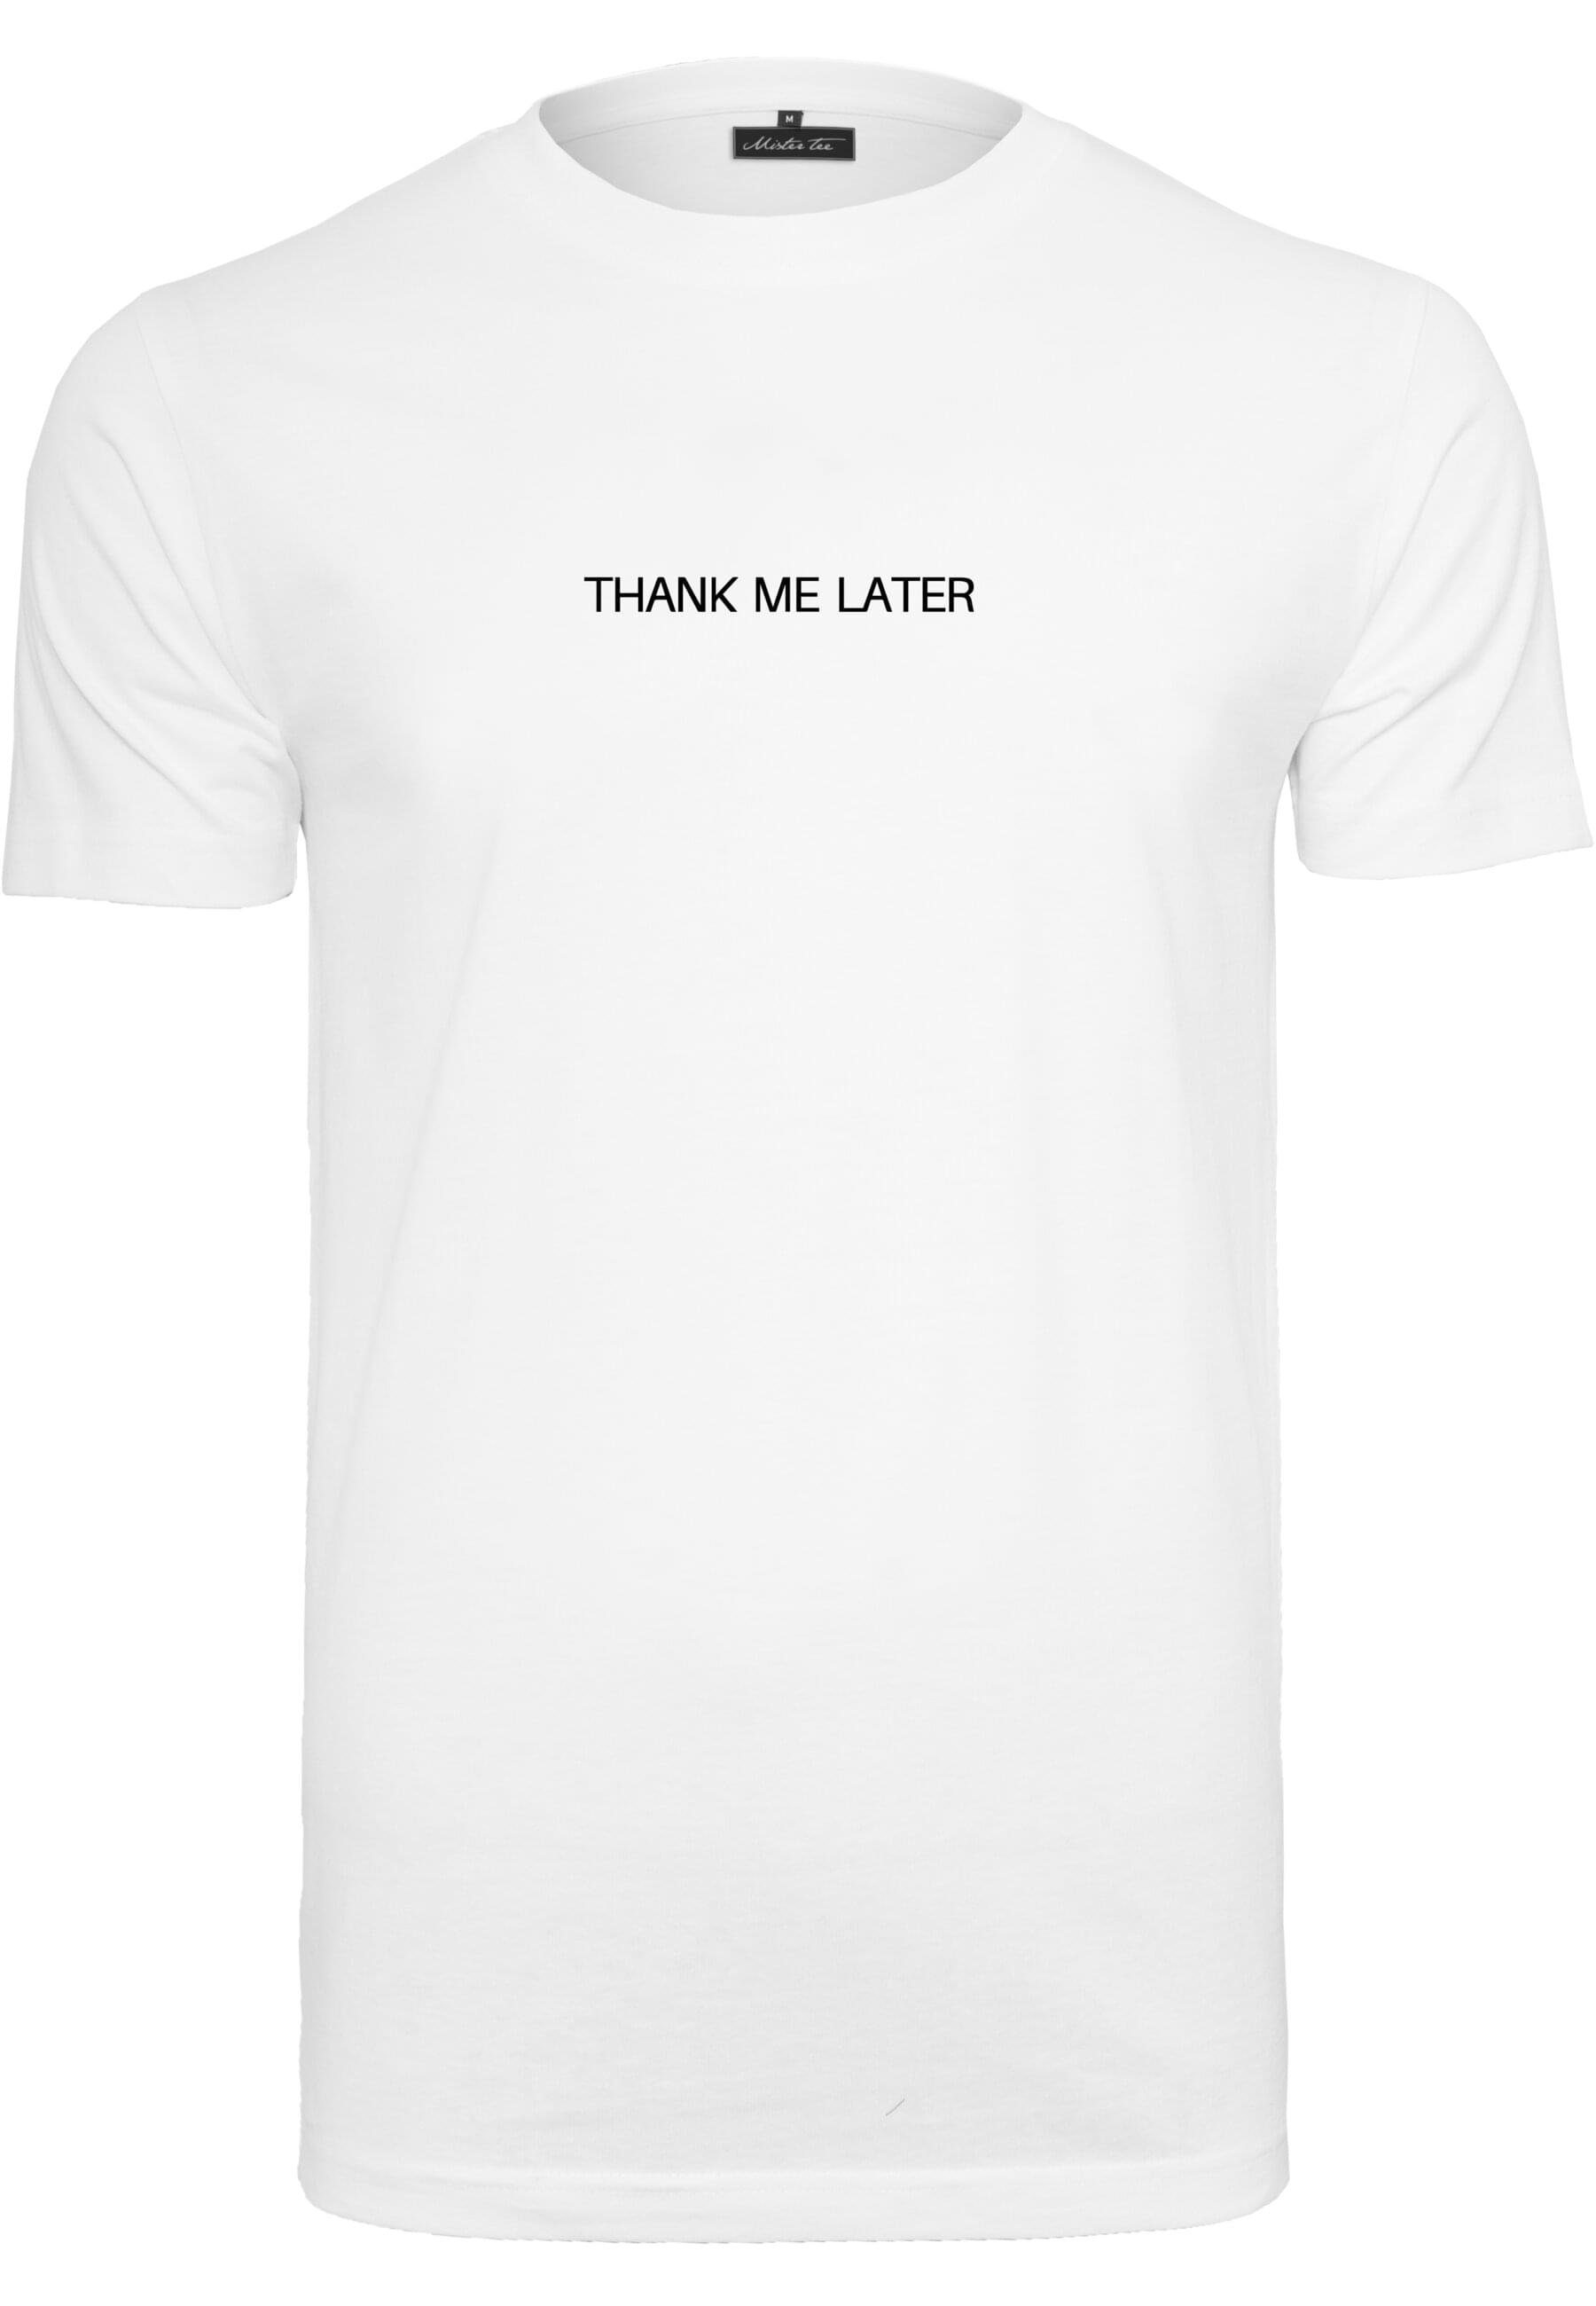 Tee Me MisterTee Herren T-Shirt white Thank (1-tlg) Later